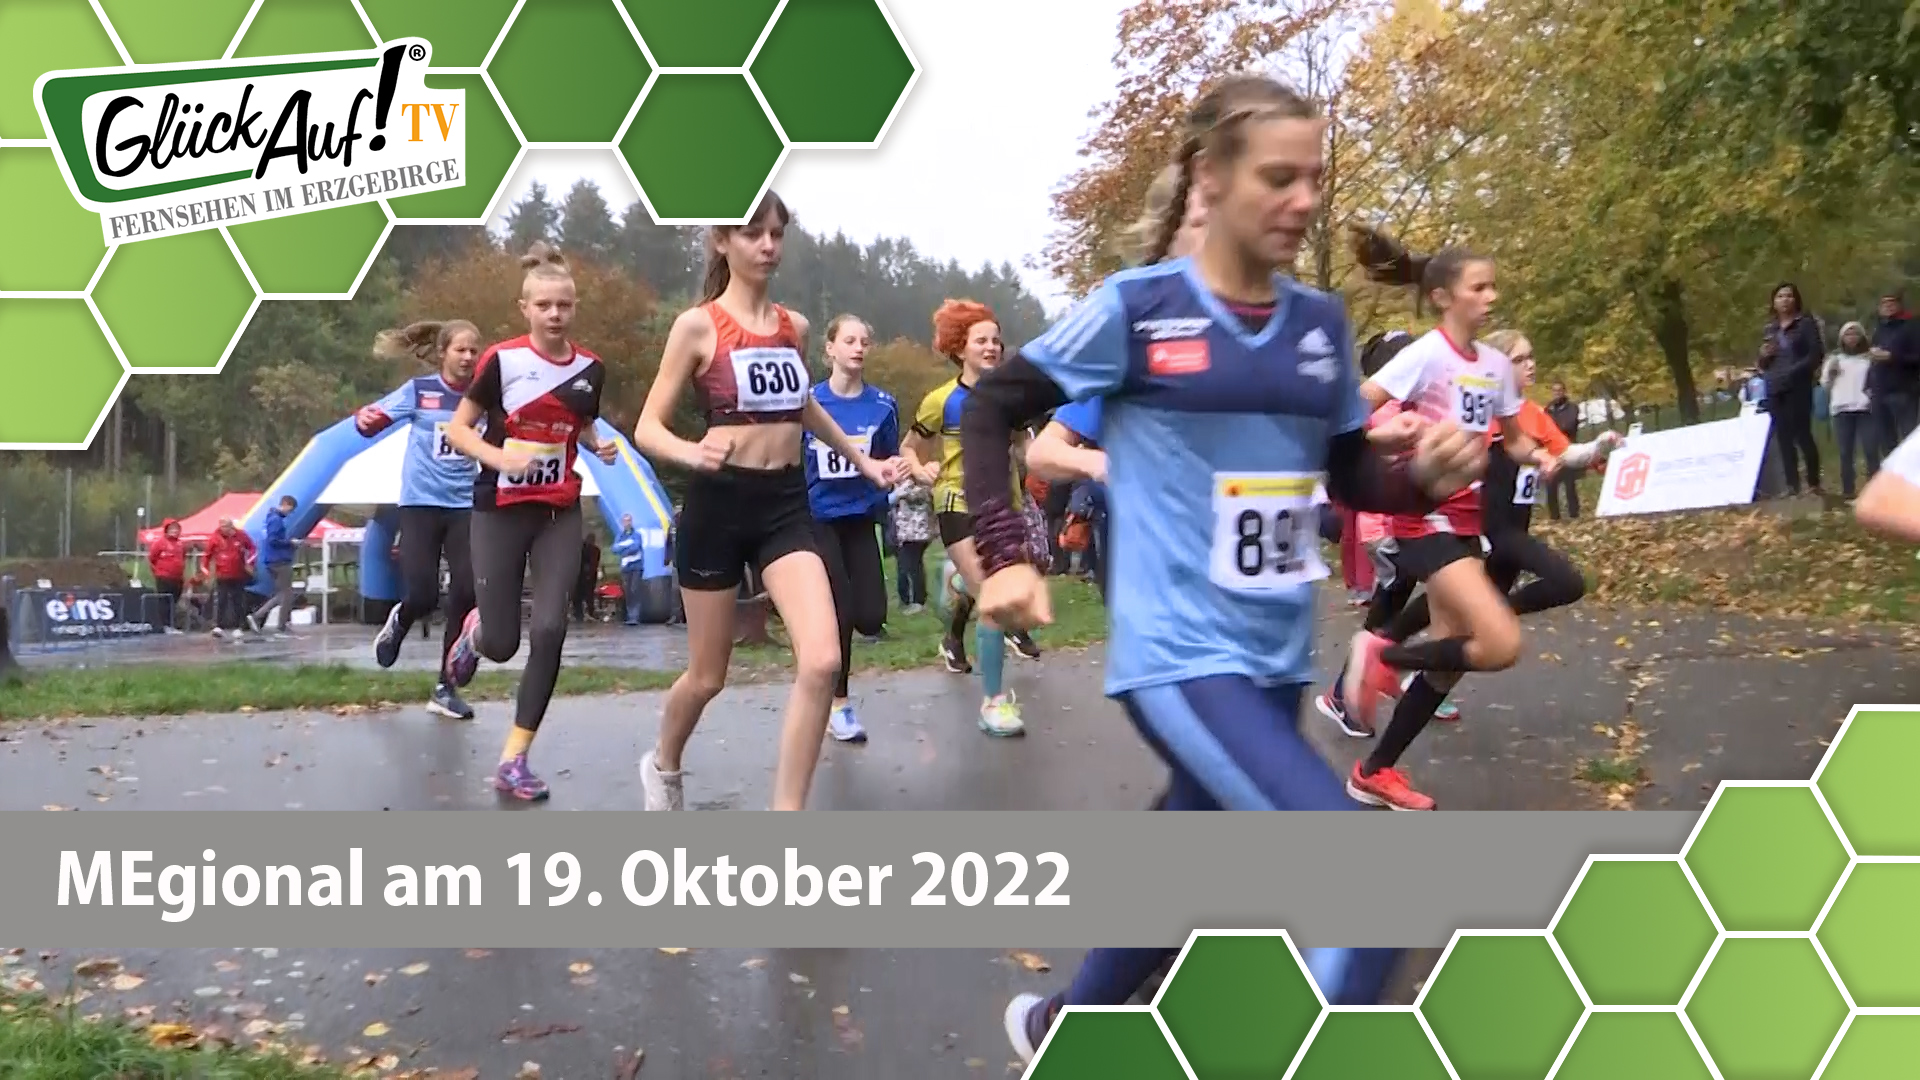 MEgional am 19. Oktober 2022 - mit der Regionalmeisterschaft im Crosslauf in Gelenau